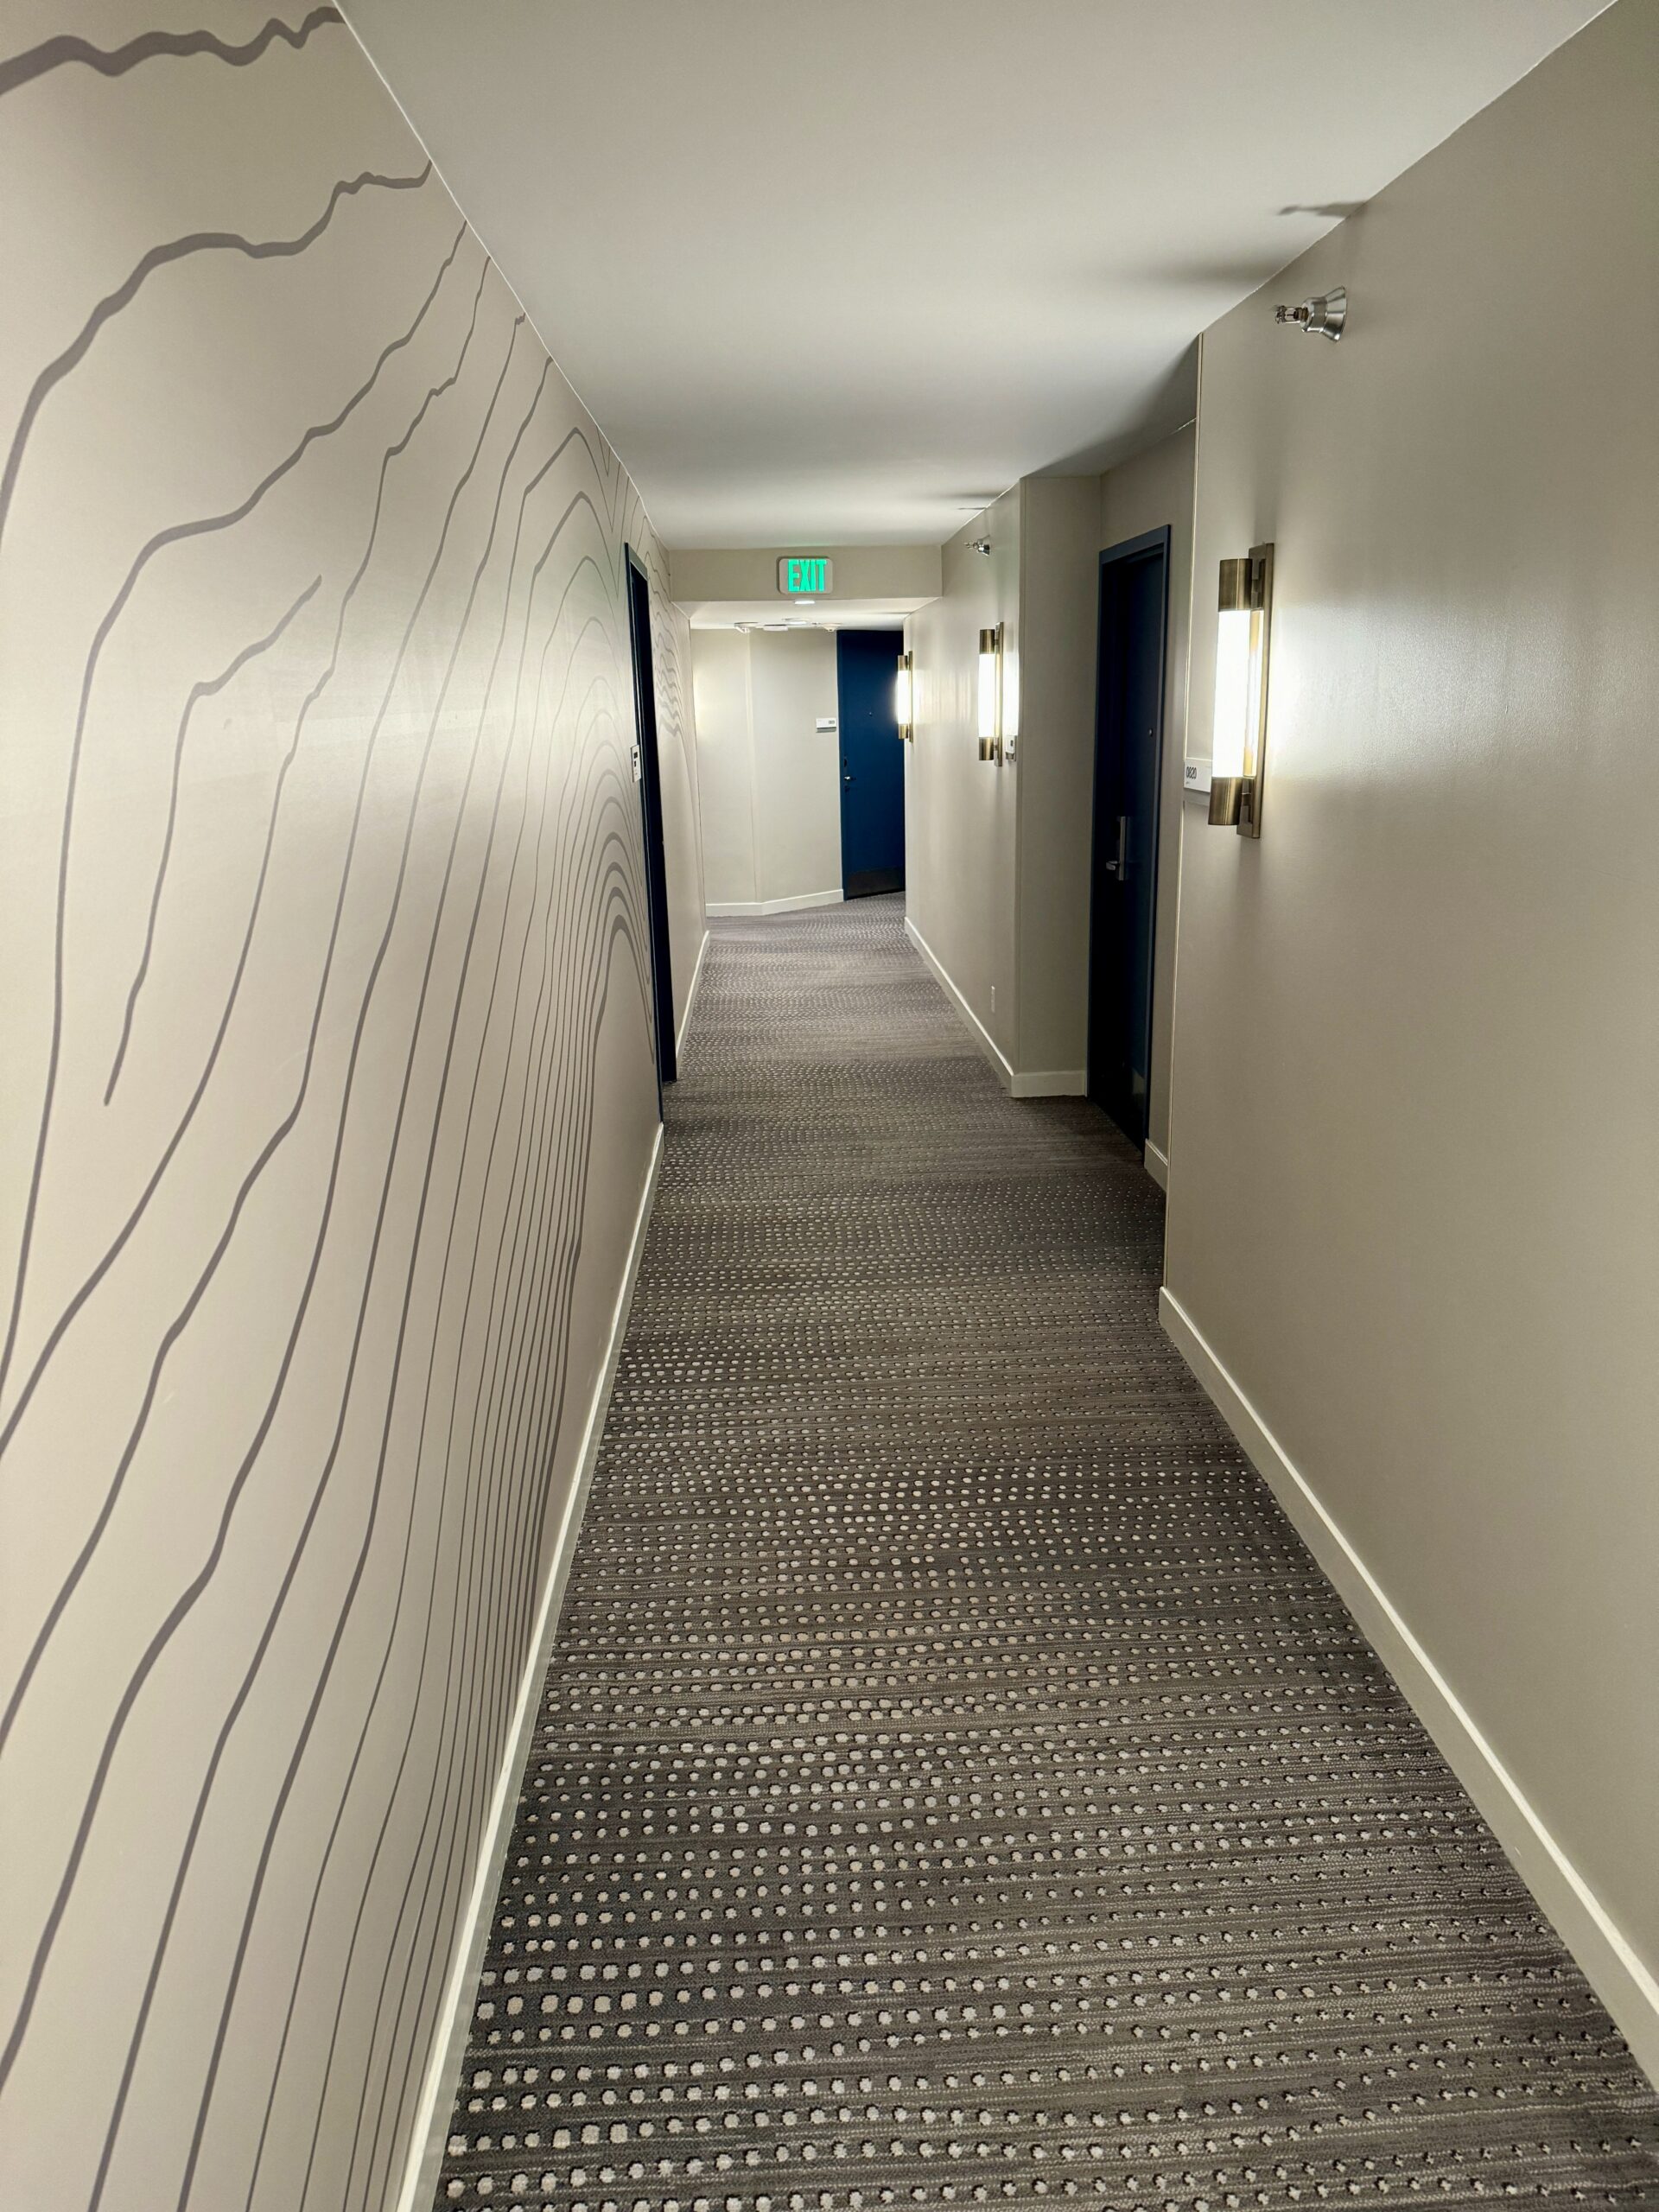 Le Méridien Hallway 2